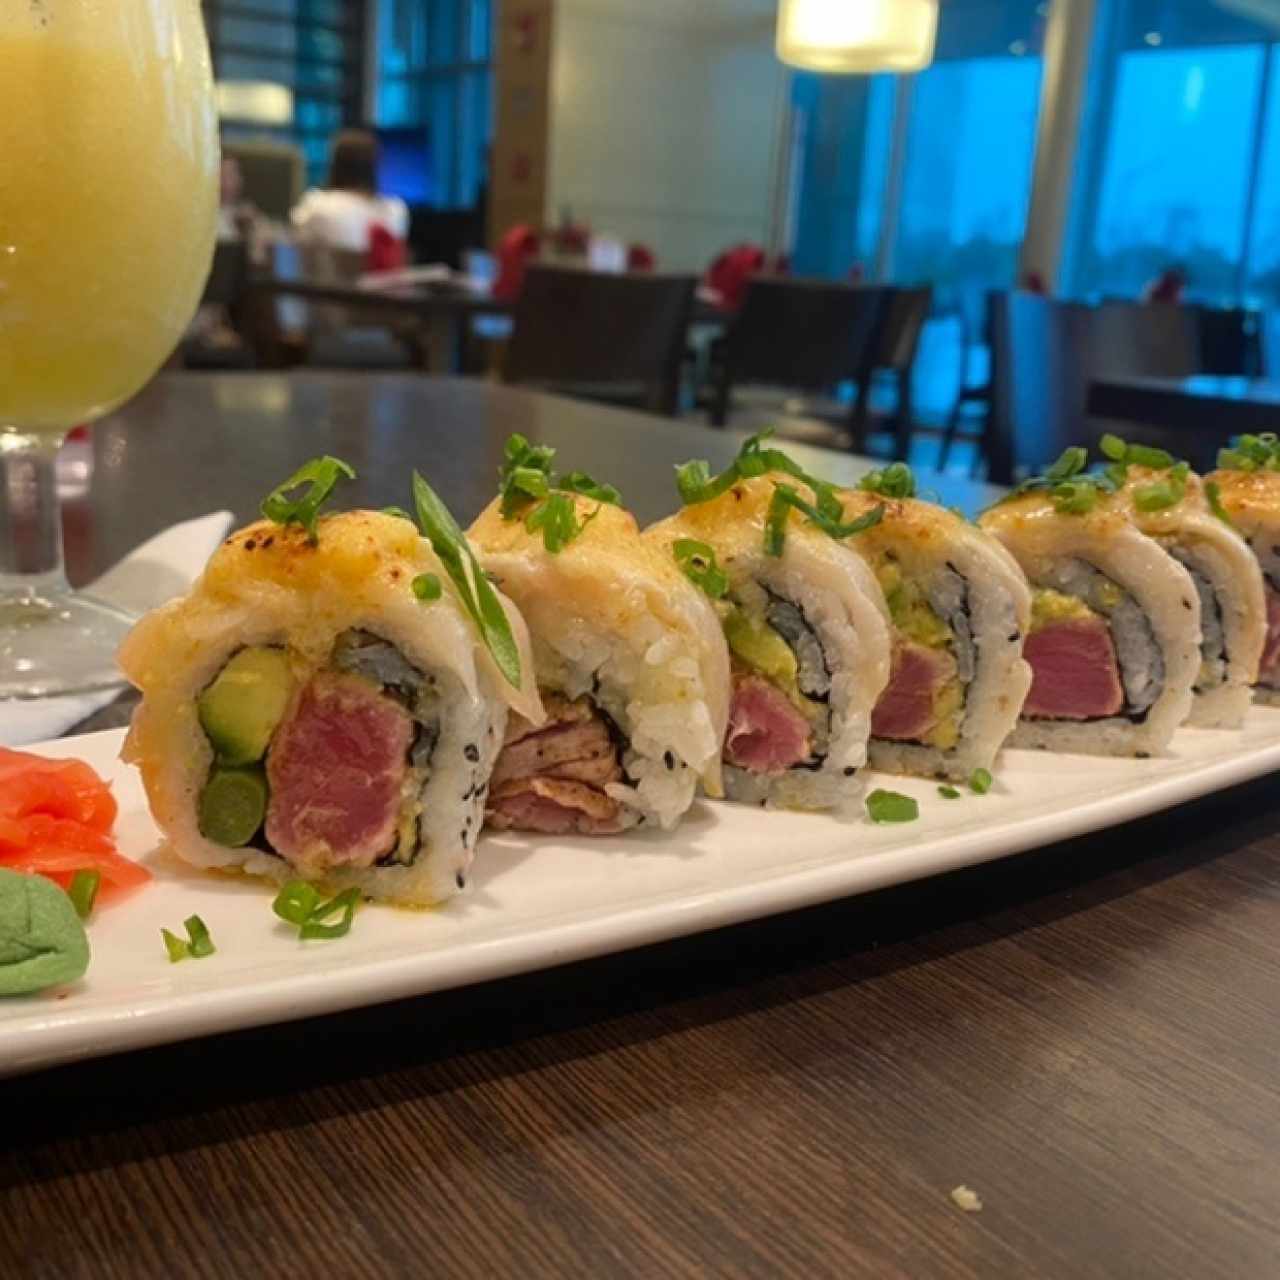 Sushi Rolls - Spicy Tuna Roll